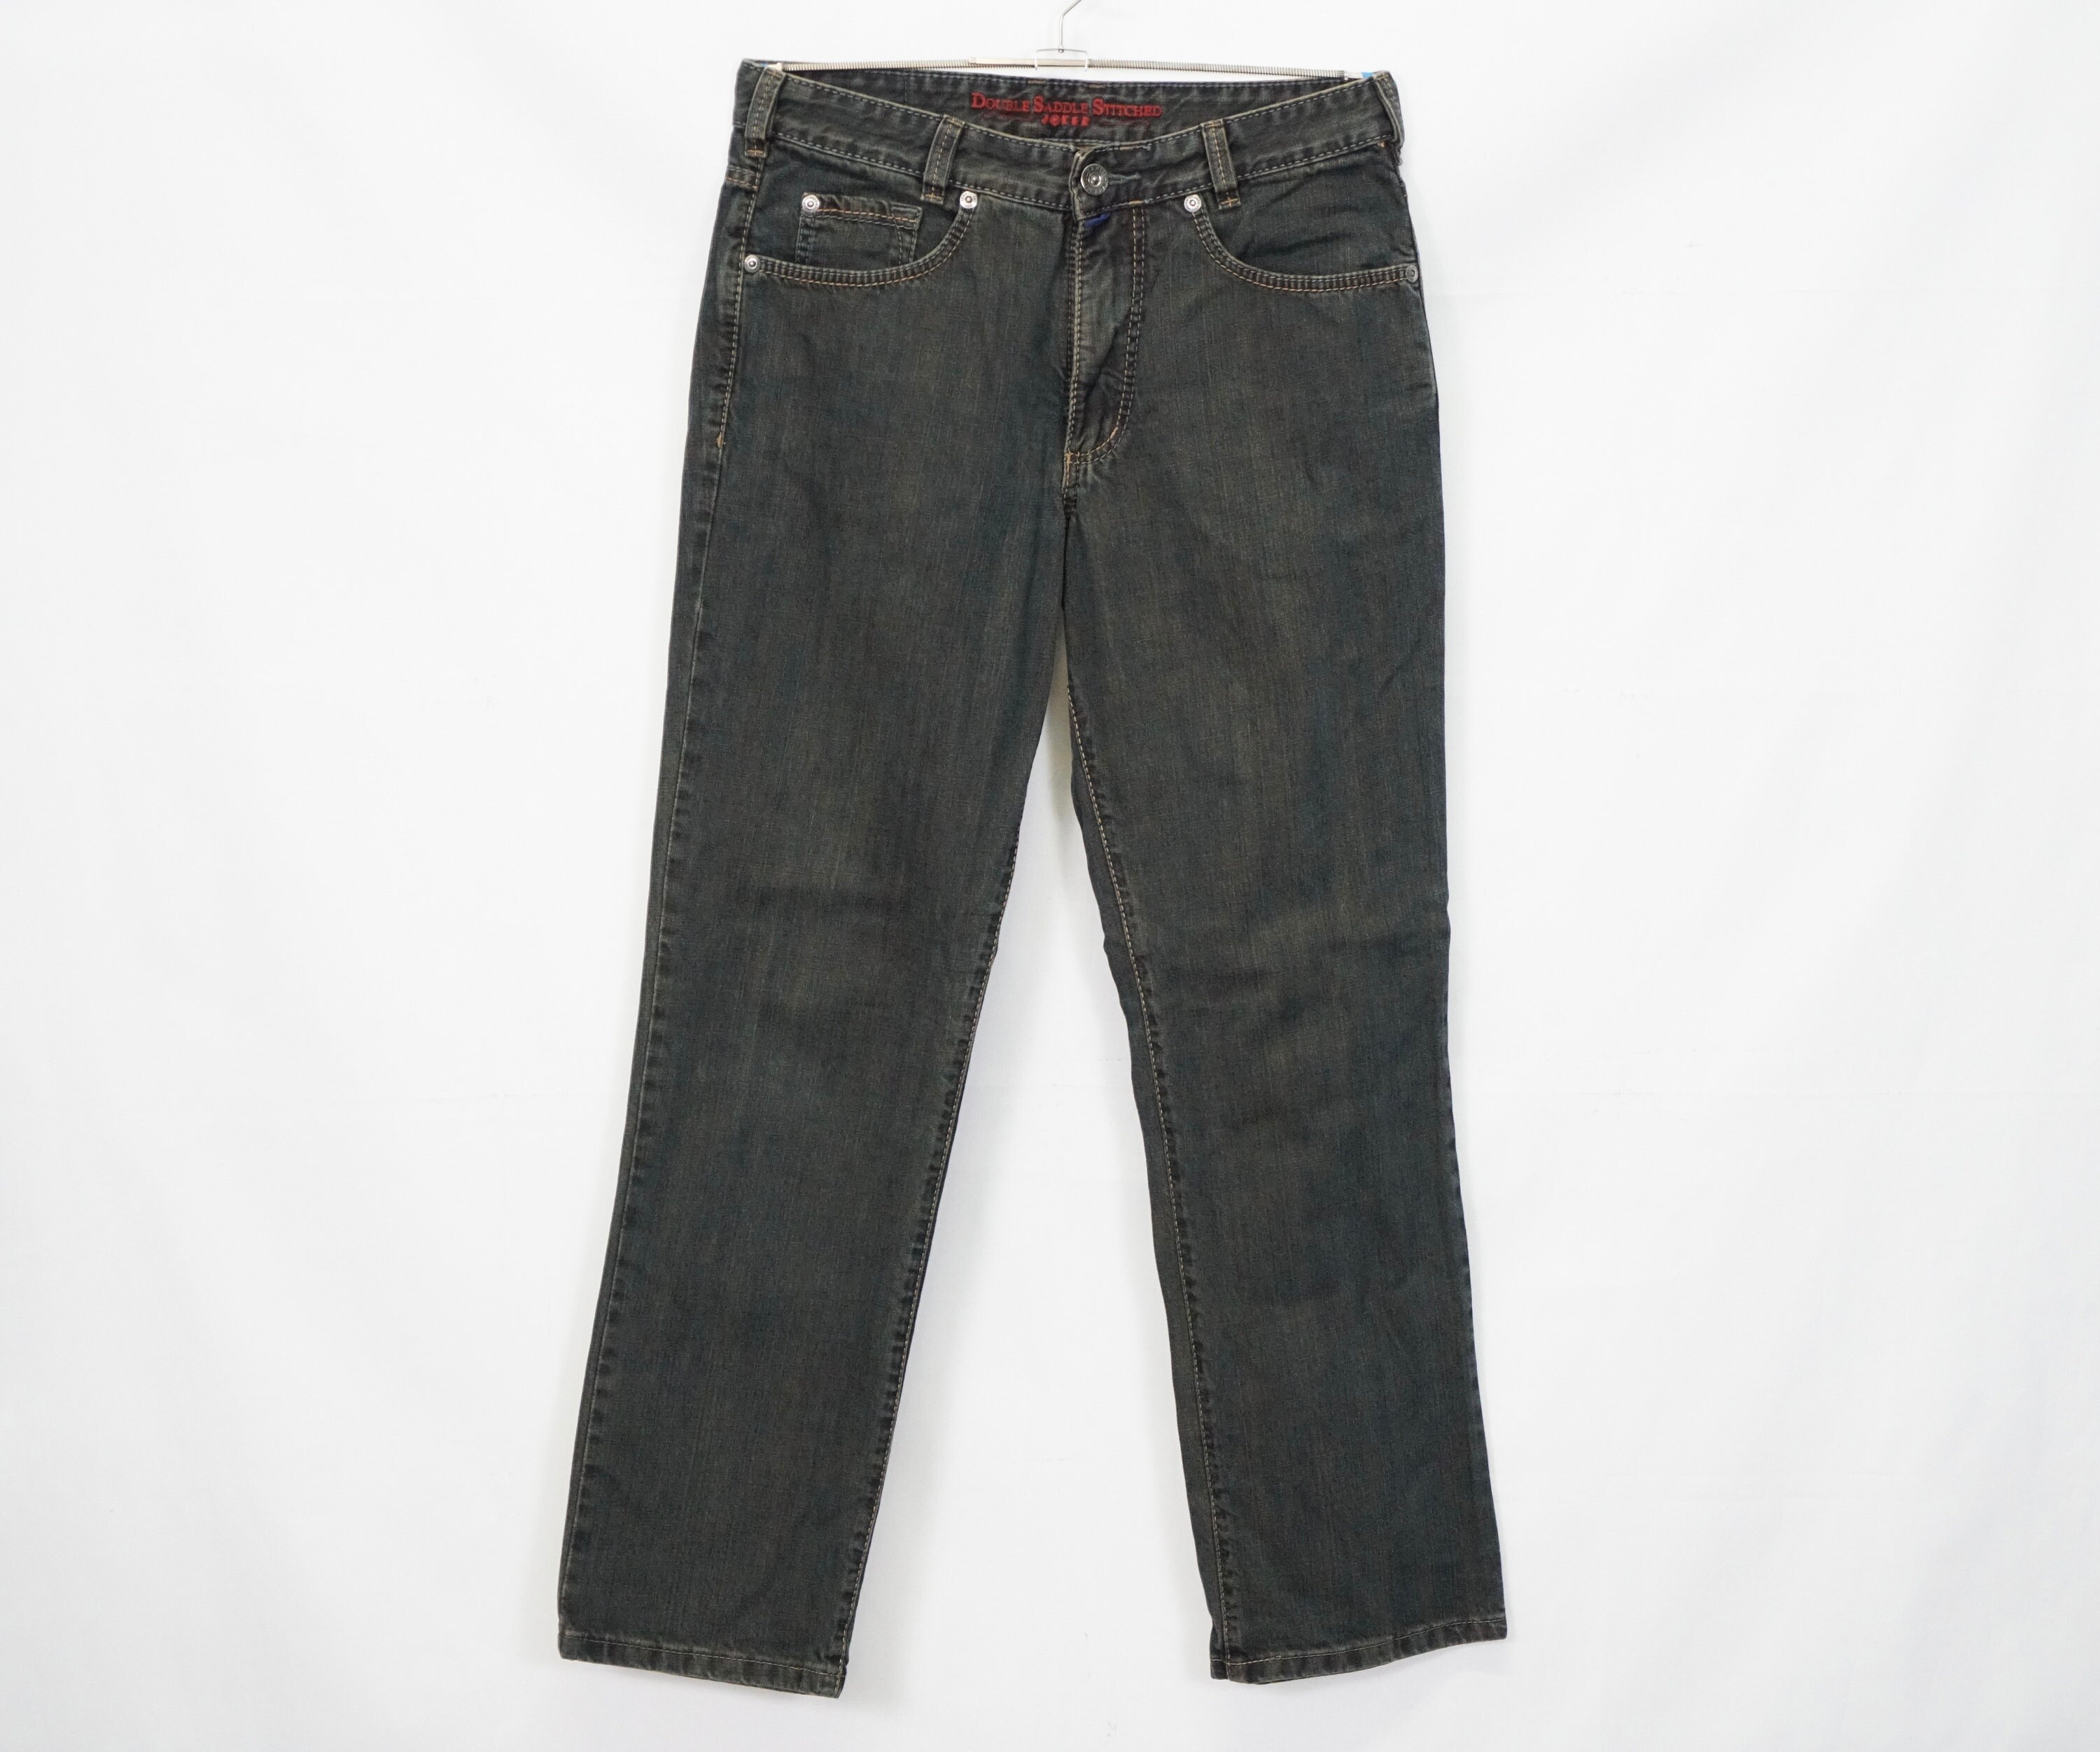 Joker Men's Jeans Pants Size W33 L32 Model Clark - Etsy